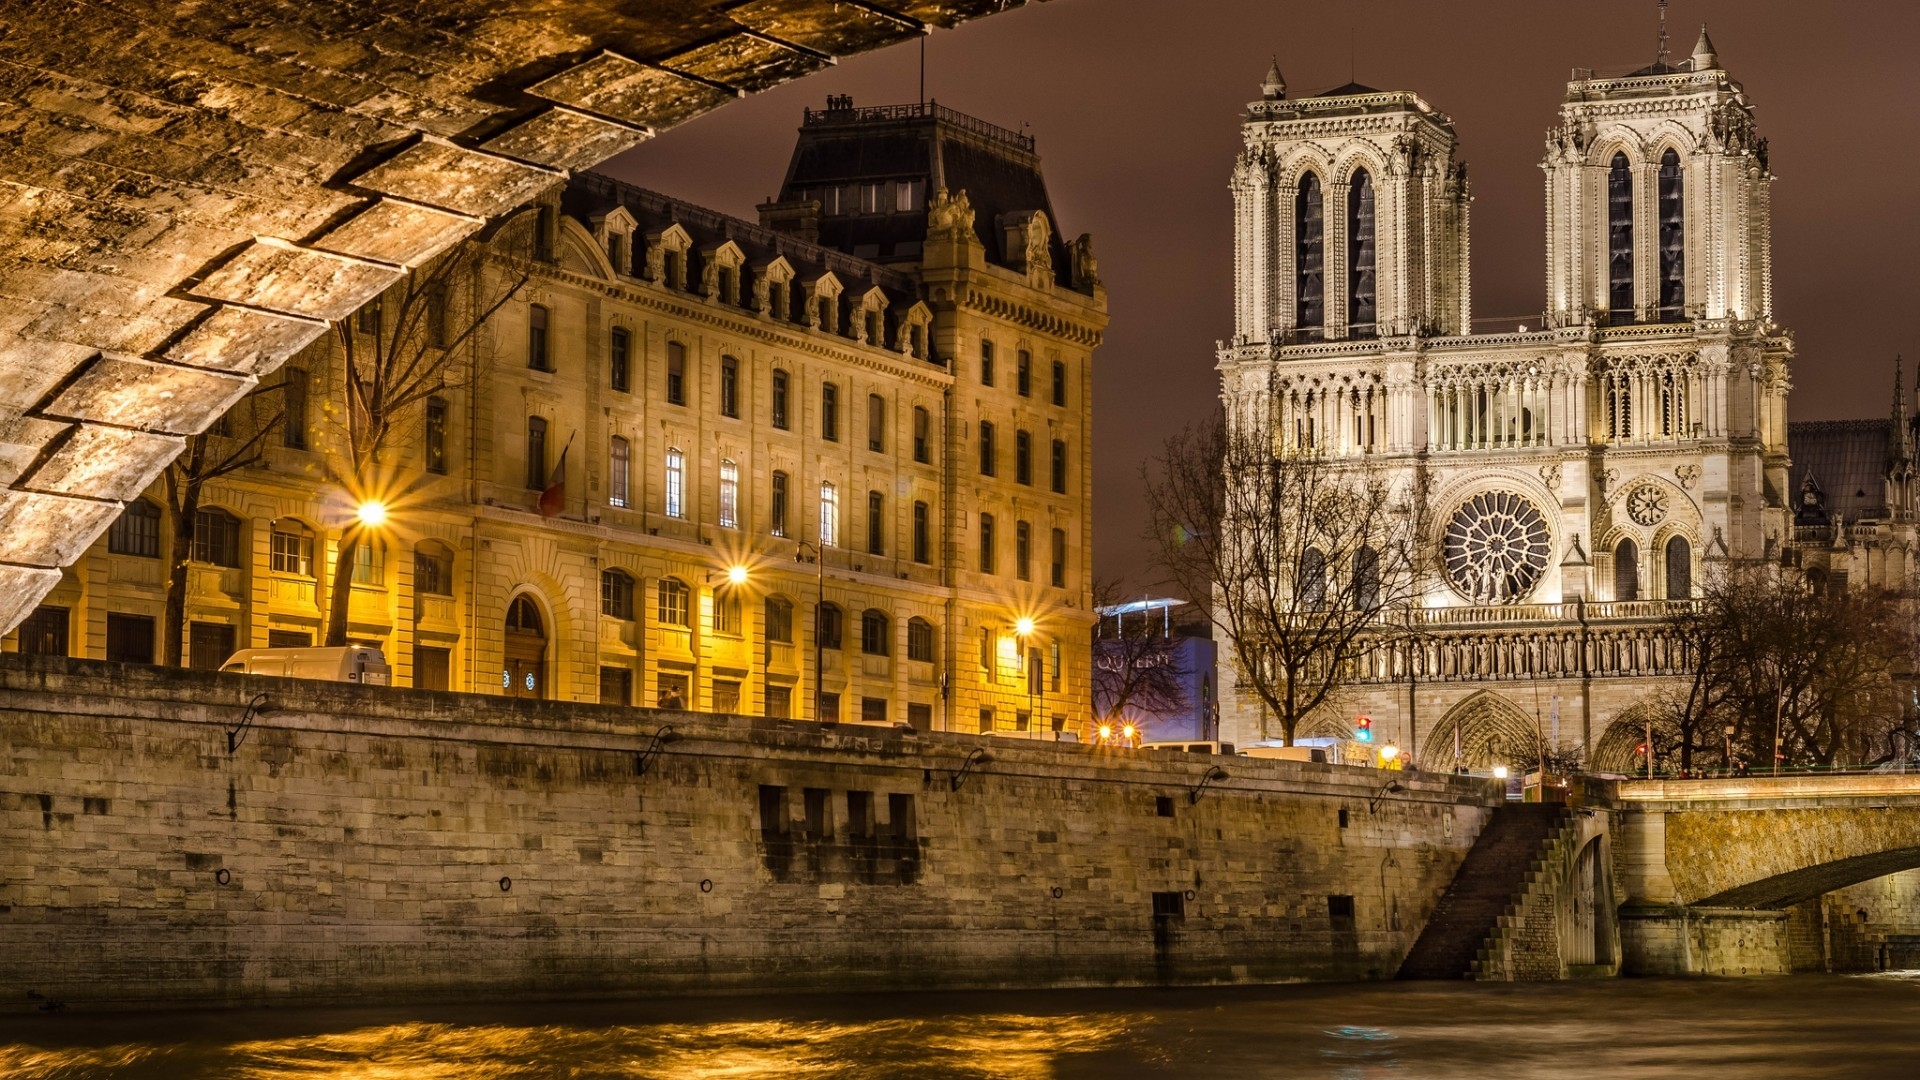 Notre Dame de Paris Front View for 1920 x 1080 HDTV 1080p resolution